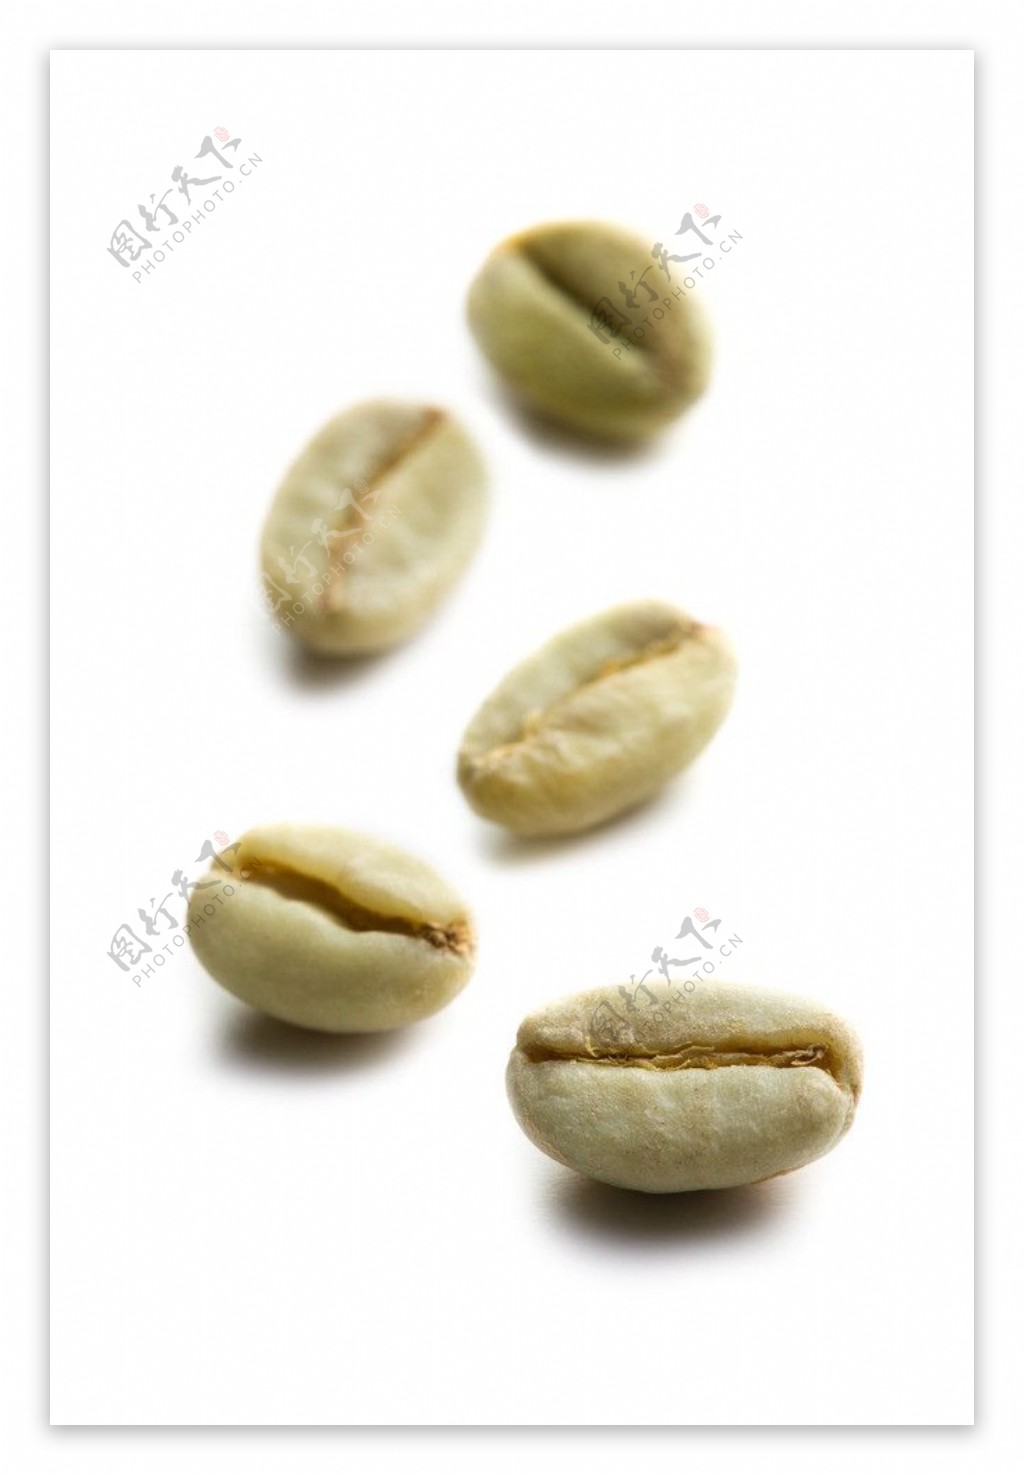 咖啡豆图片